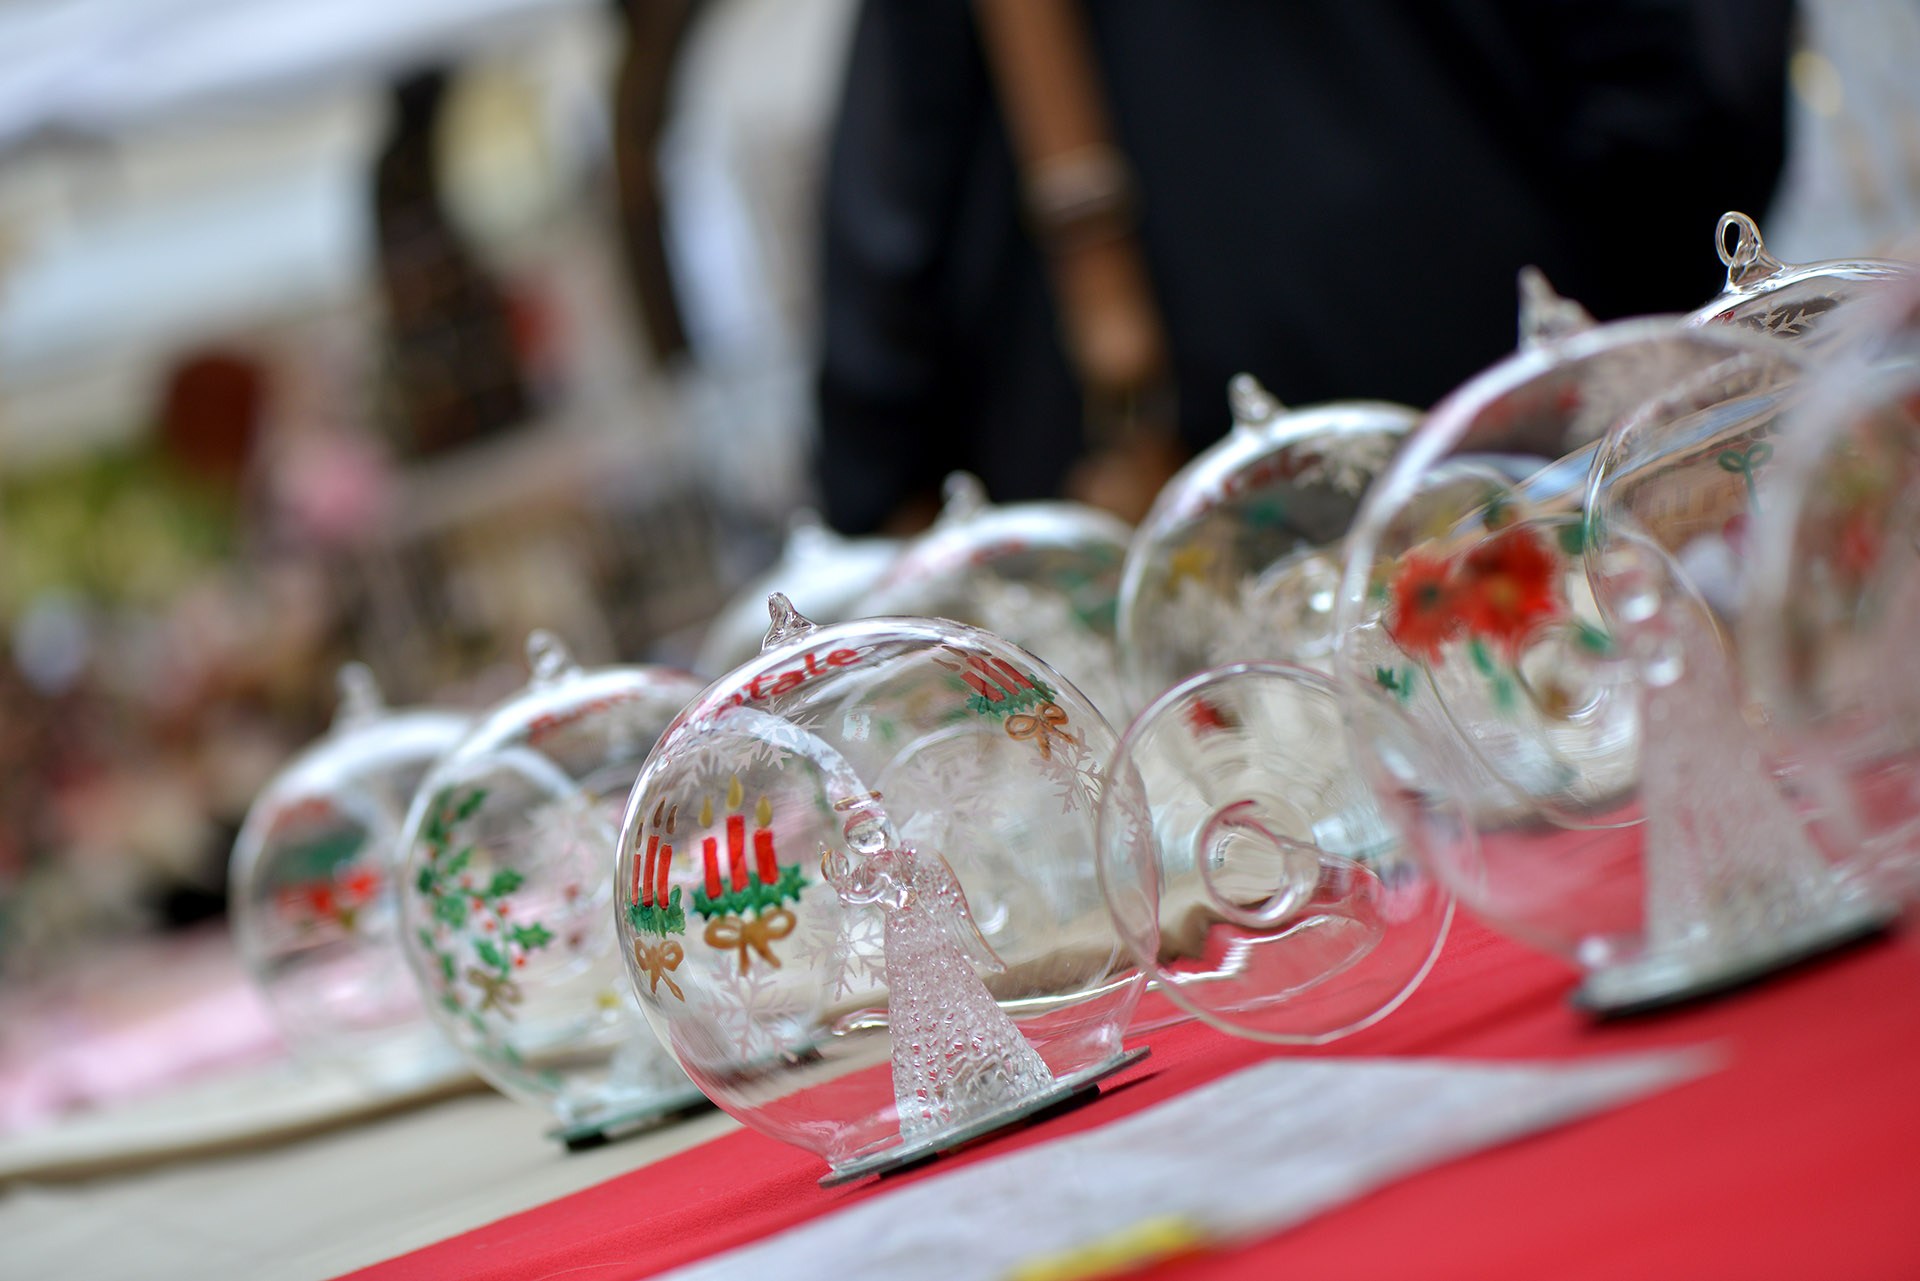 Mercato artigiano natalizio, Lucca